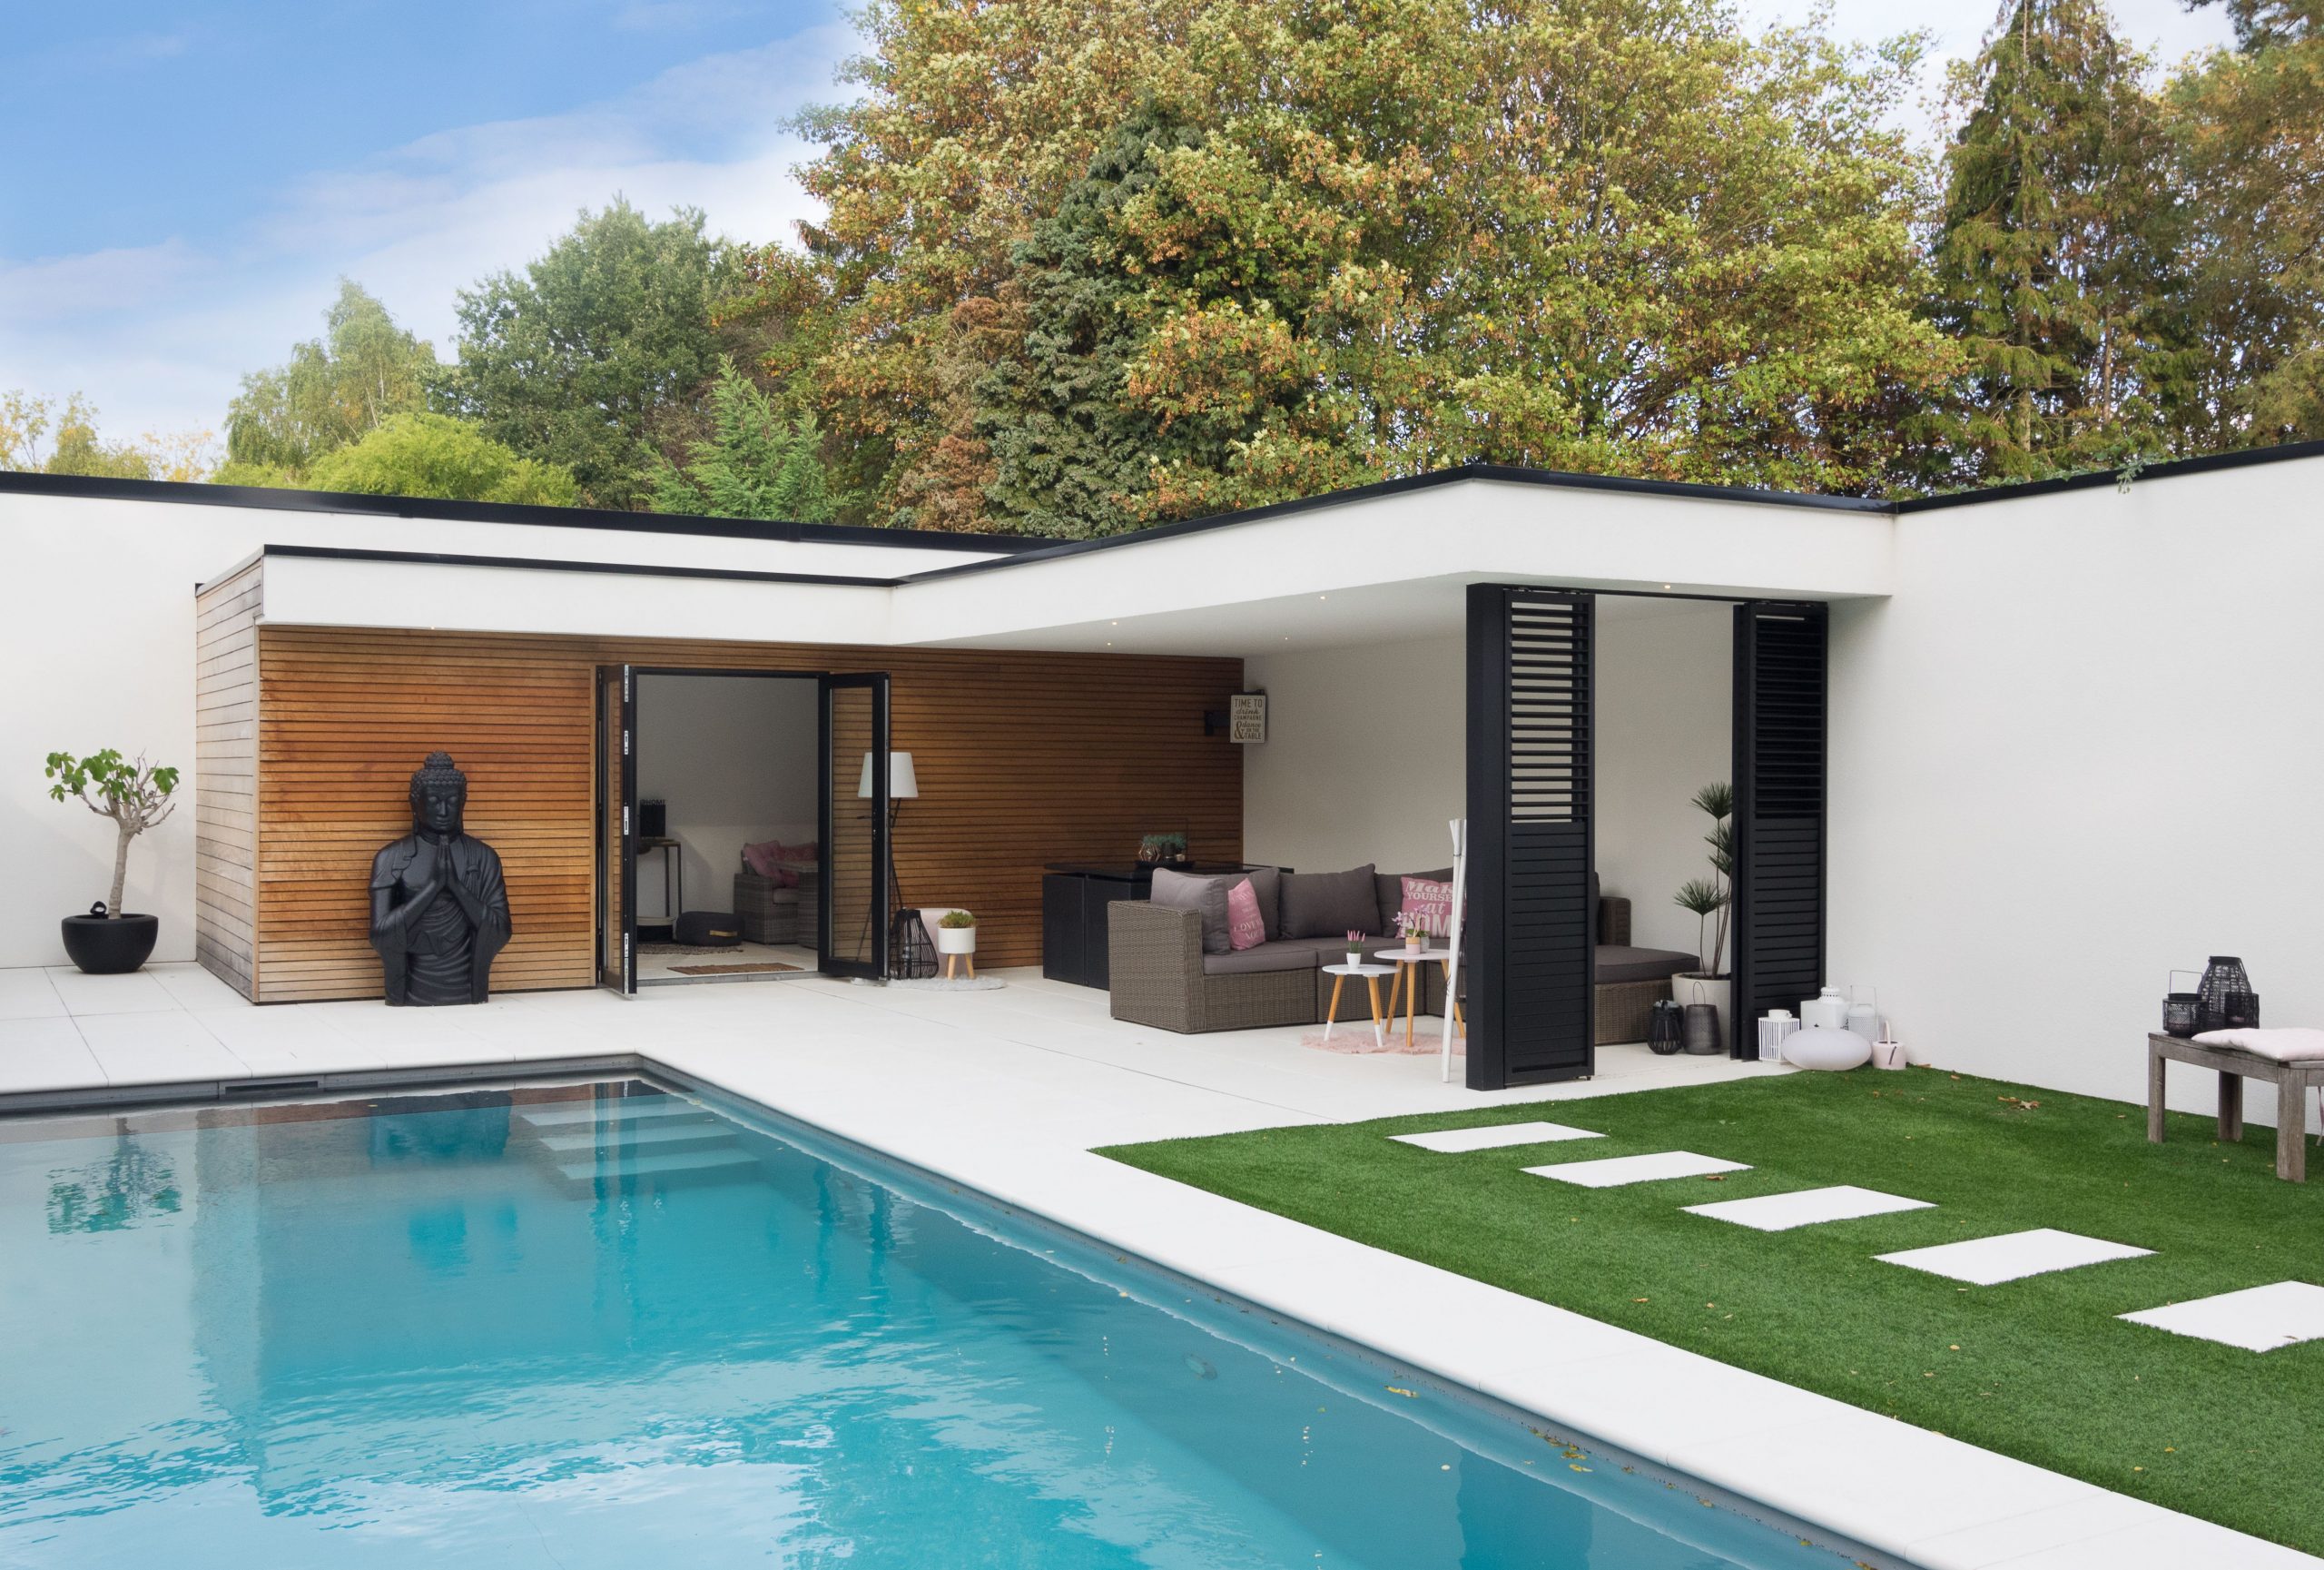 Pin Von A Eder Auf Pool In 2020 | Poolhaus, Gartenhaus Und ... à Pool House Moderne En Kit